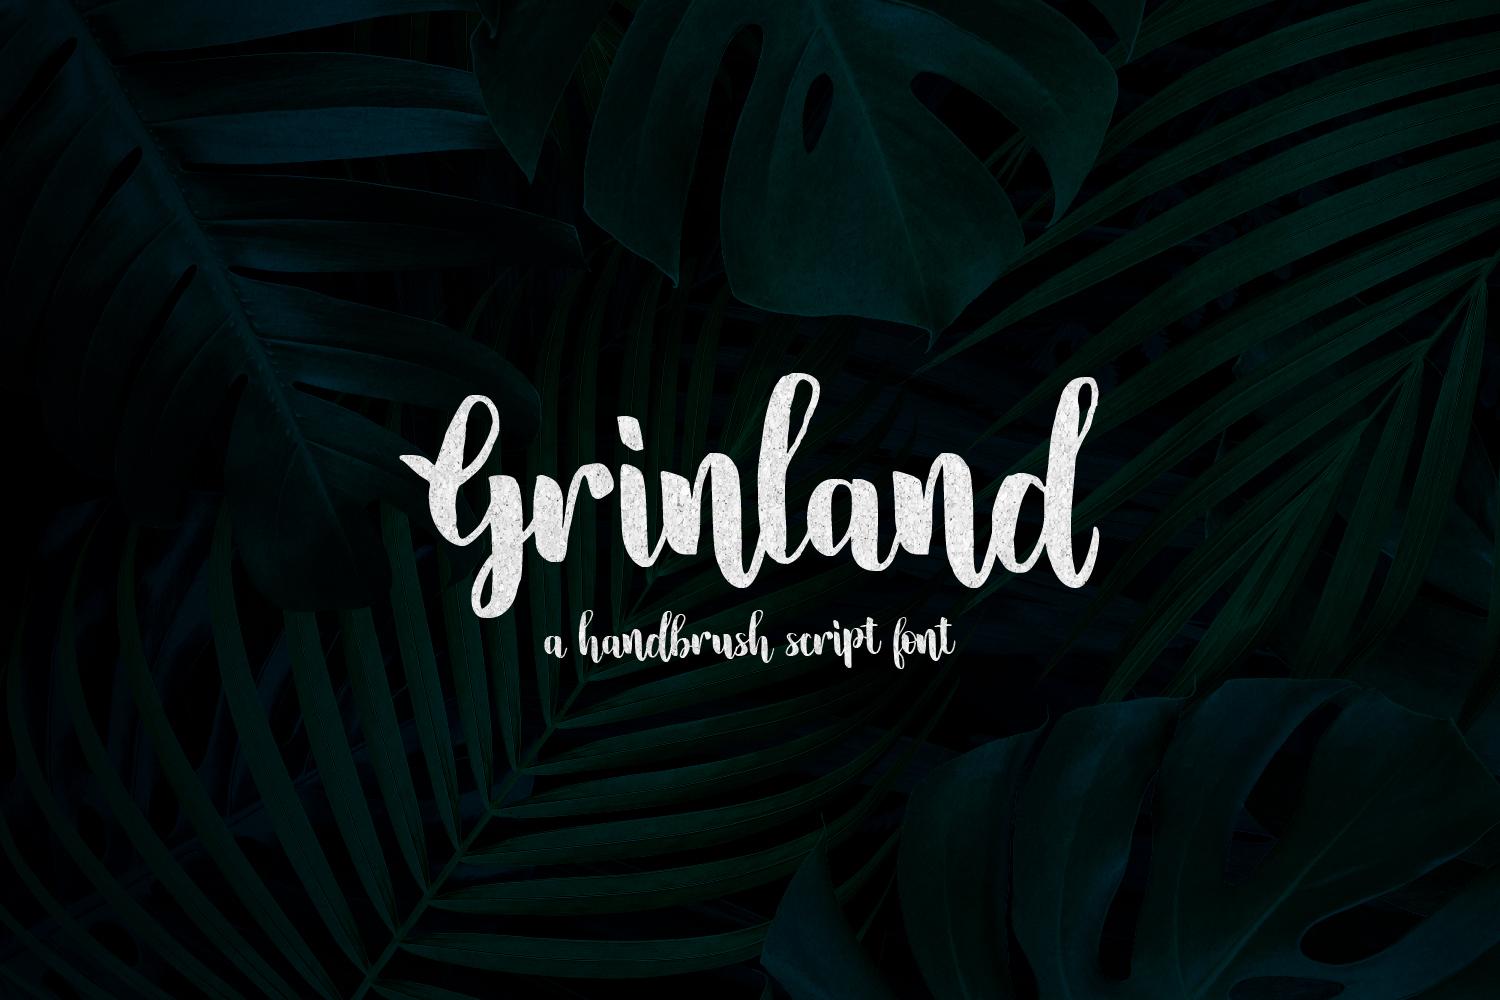 Grinland Font